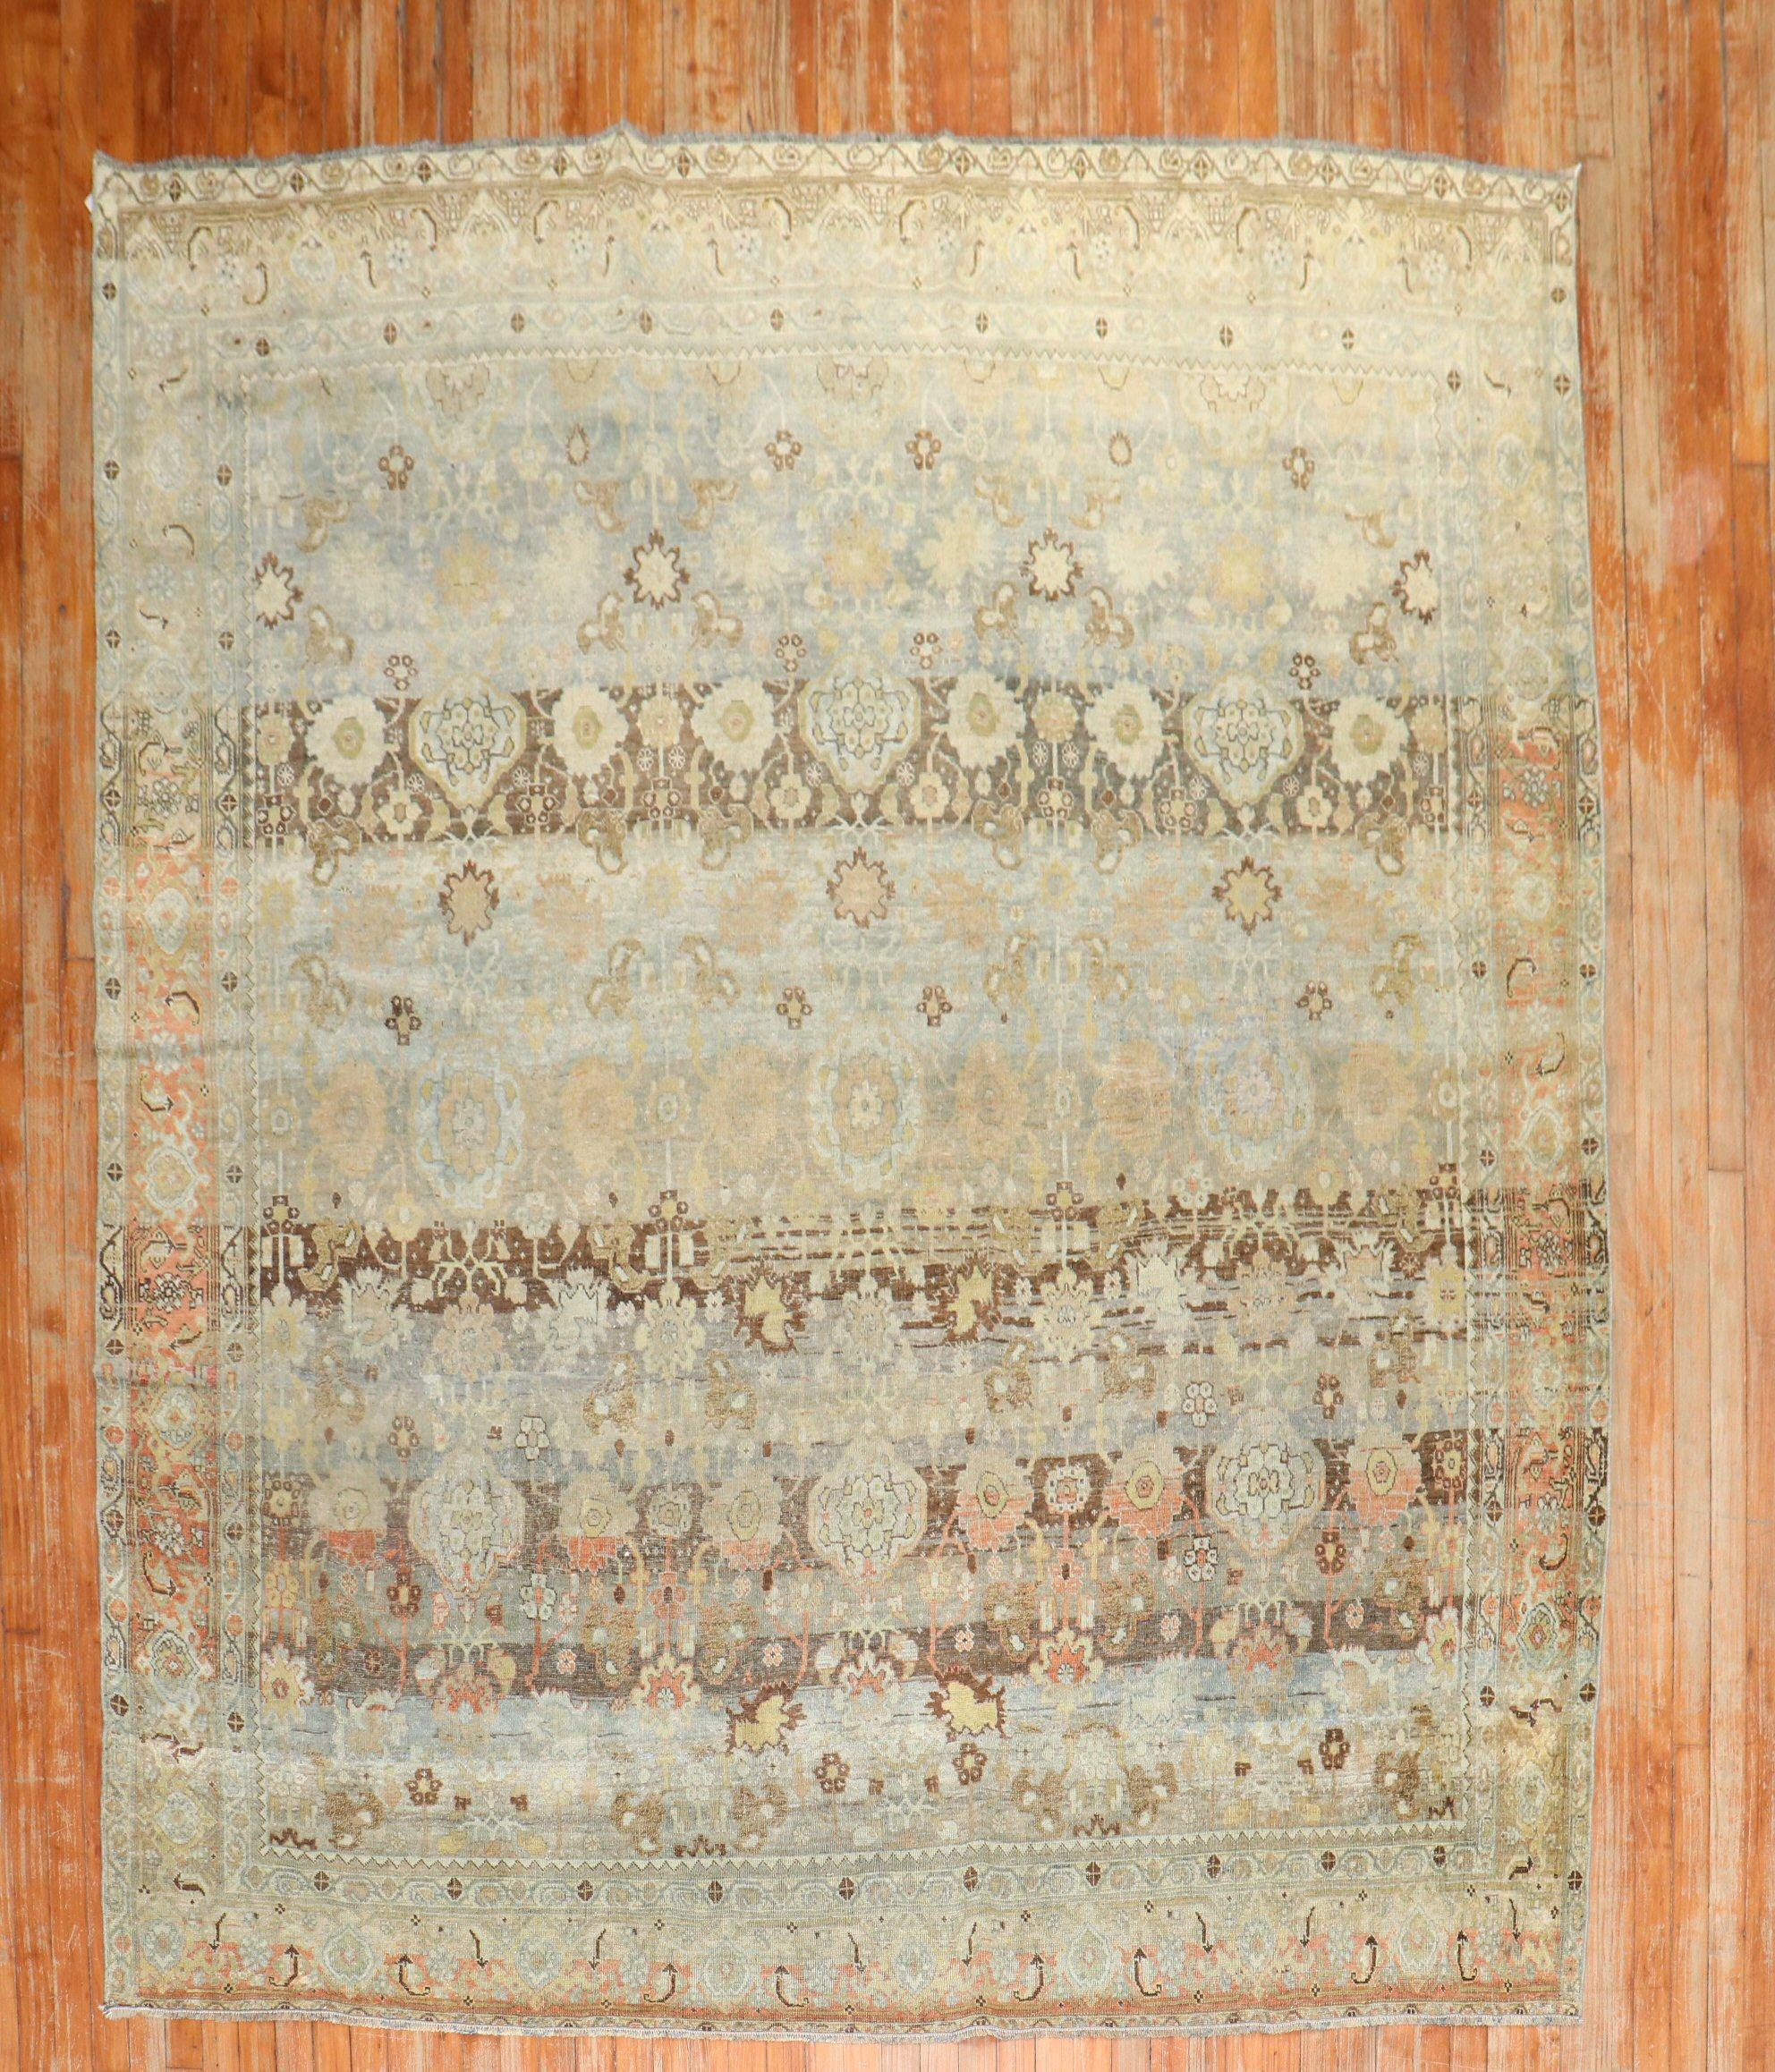 Persischer quadratischer Bidjar-Teppich aus dem frühen 20. Jahrhundert mit einem großflächigen Allover-Muster in warmen Erdtönen

7'6'' x 8'8''
   
   